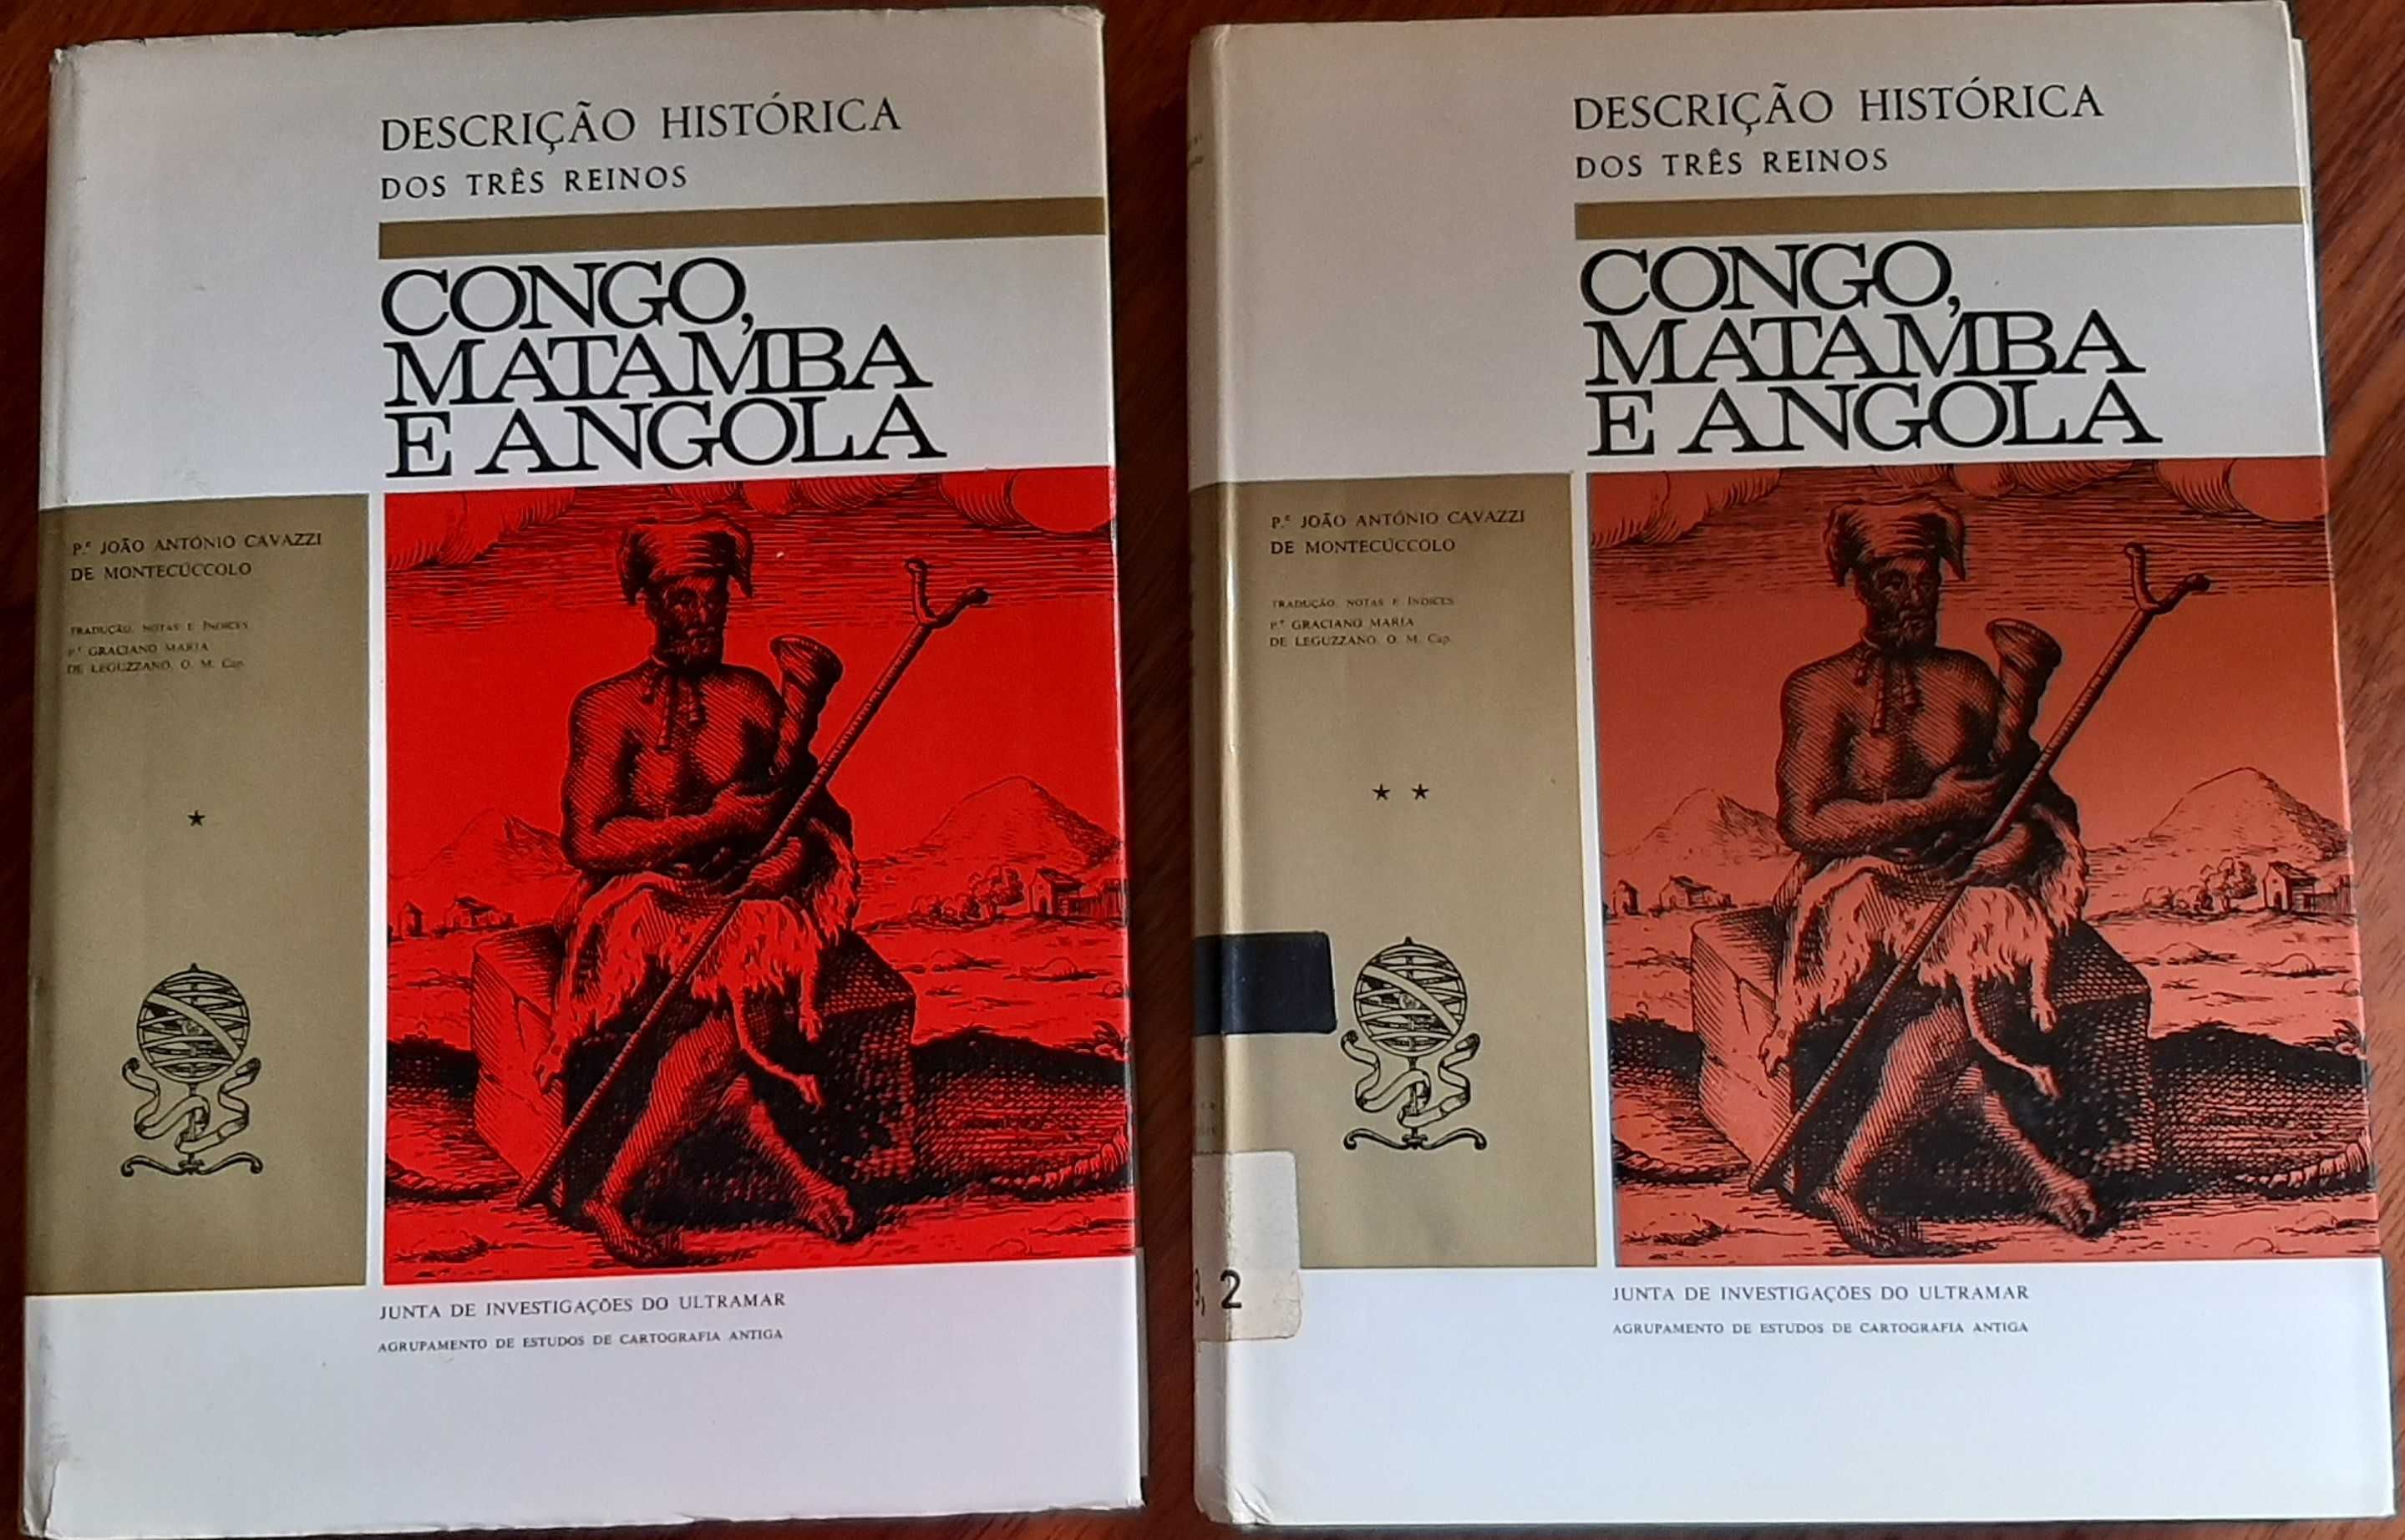 Descrição histórica dos três reinos do Congo, Matamba e Angola